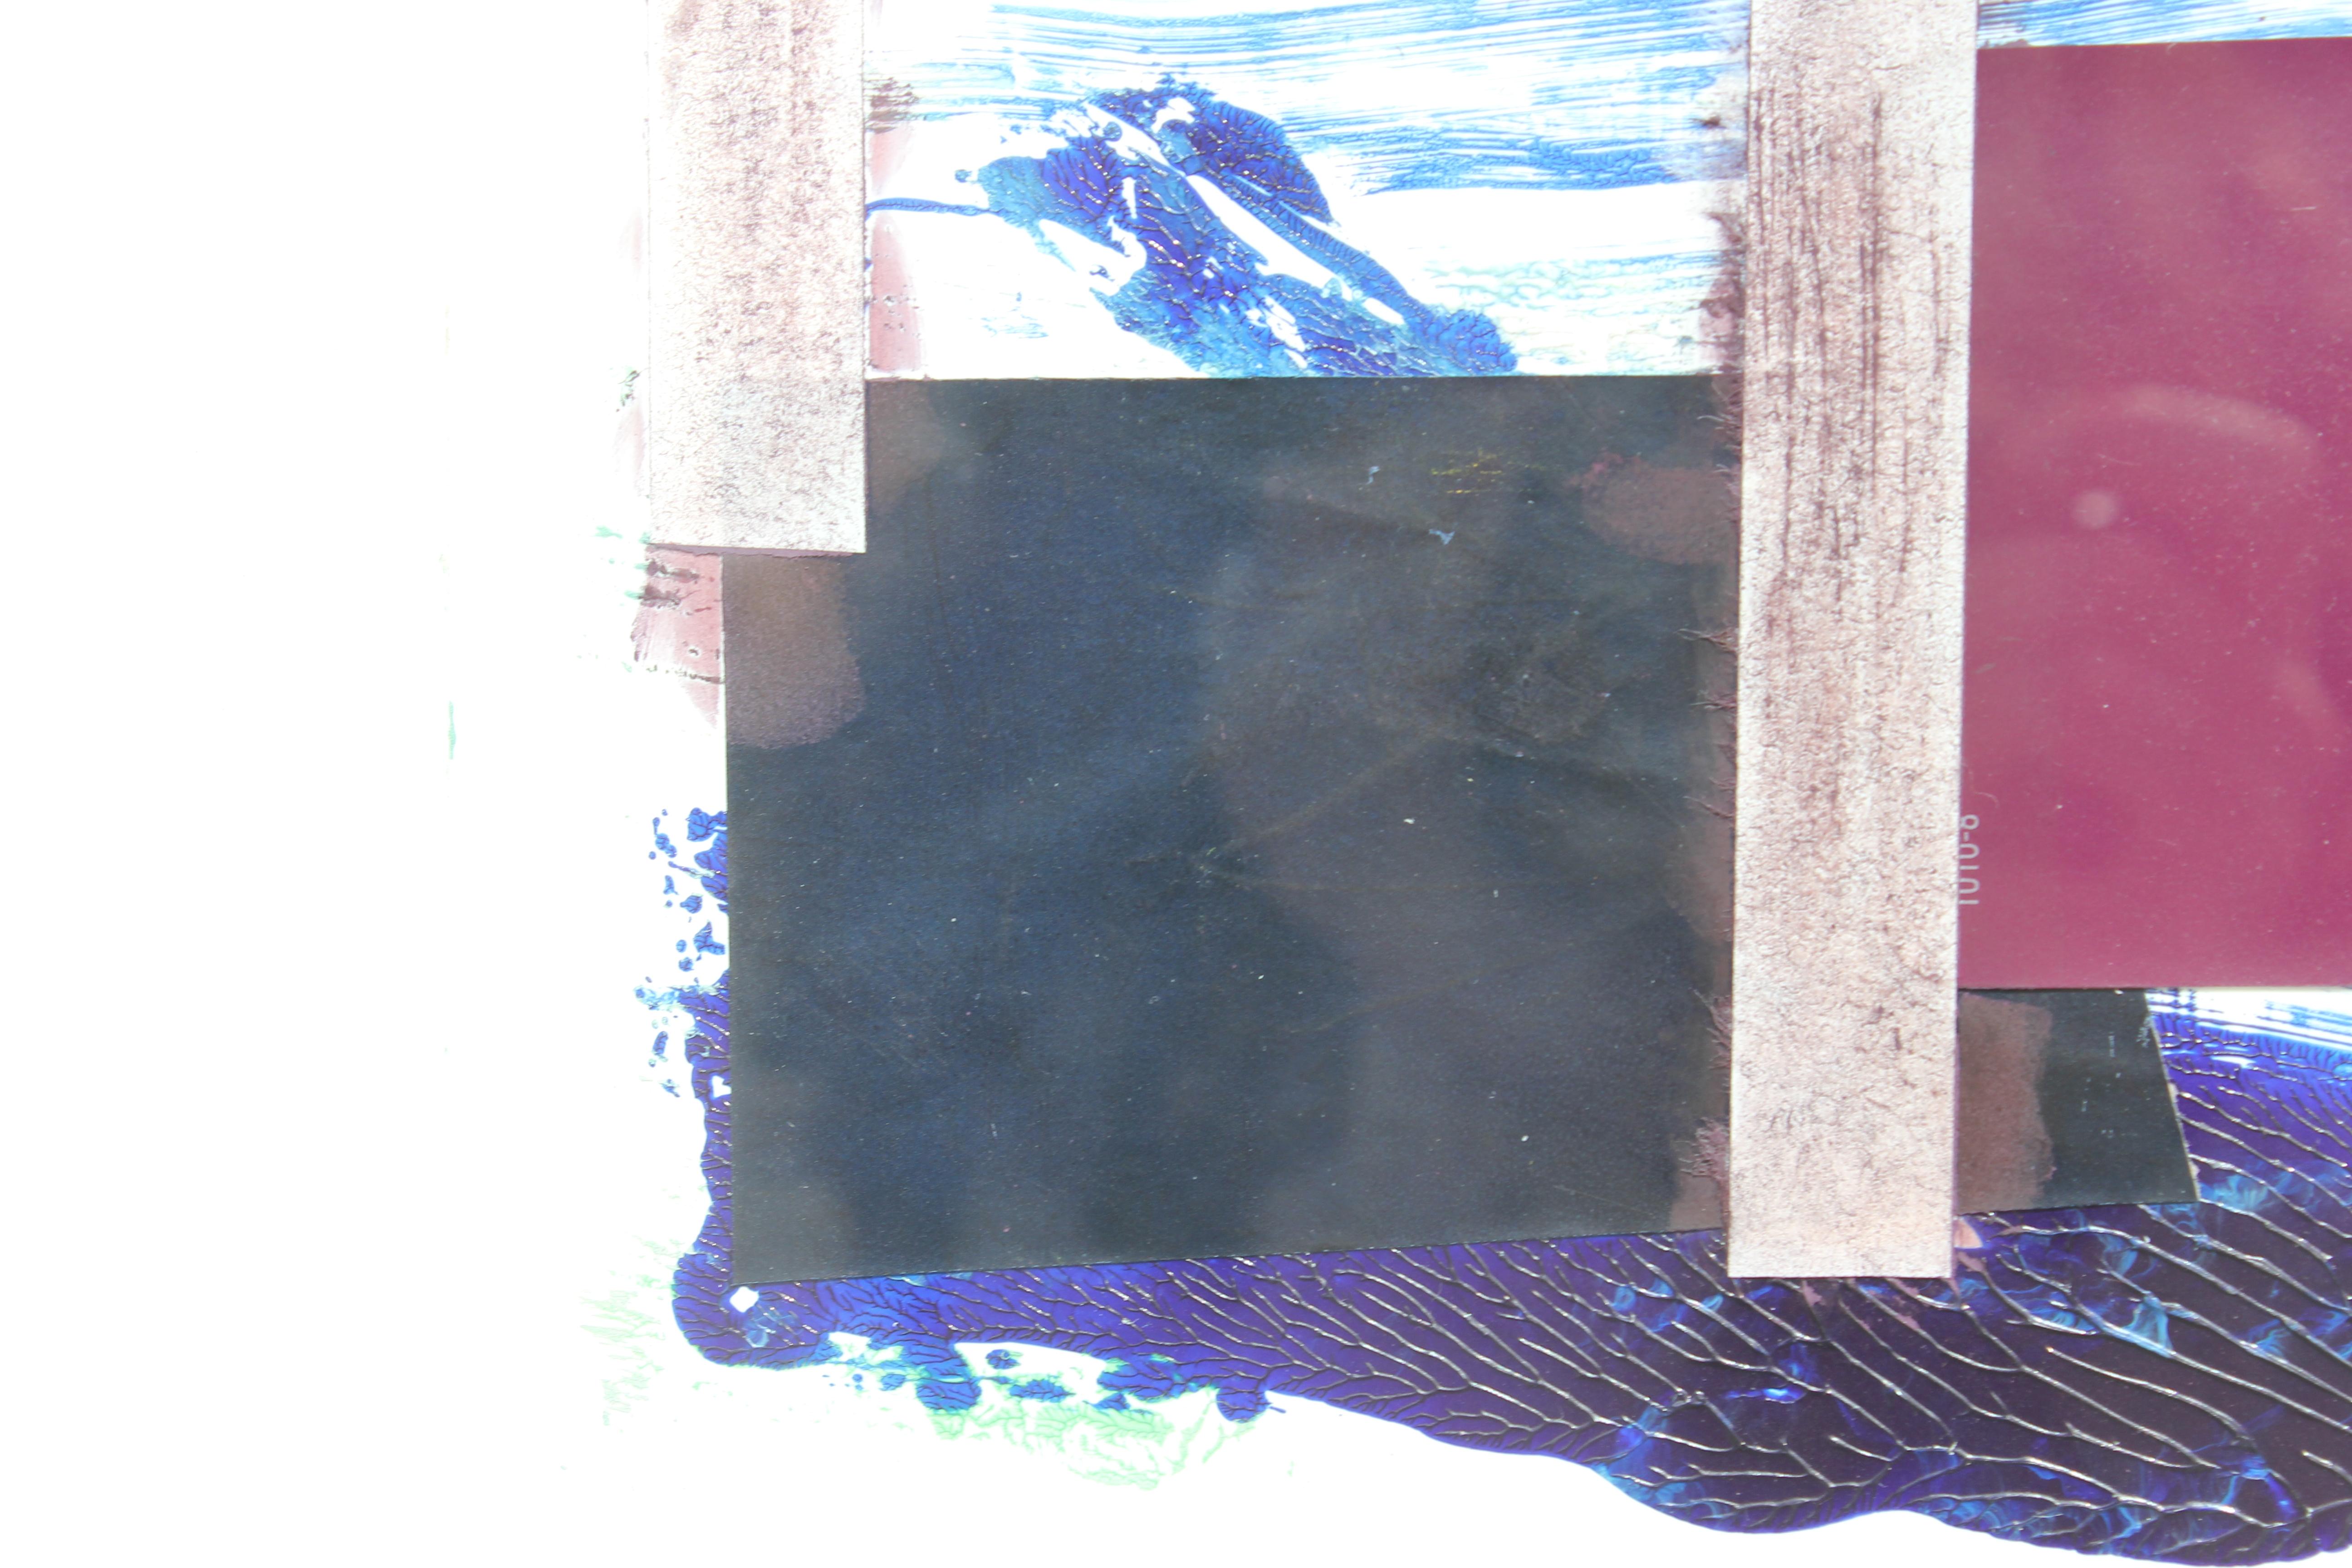 Peinture d'assemblage bleue, noire et rouge créée avec des matériaux trouvés et de la peinture acrylique. L'œuvre est titrée par l'artiste et datée de 2011. 

Biographie de l'artiste :
Lucinda Cobley est née en 1963 en Grande-Bretagne. En 1982, elle